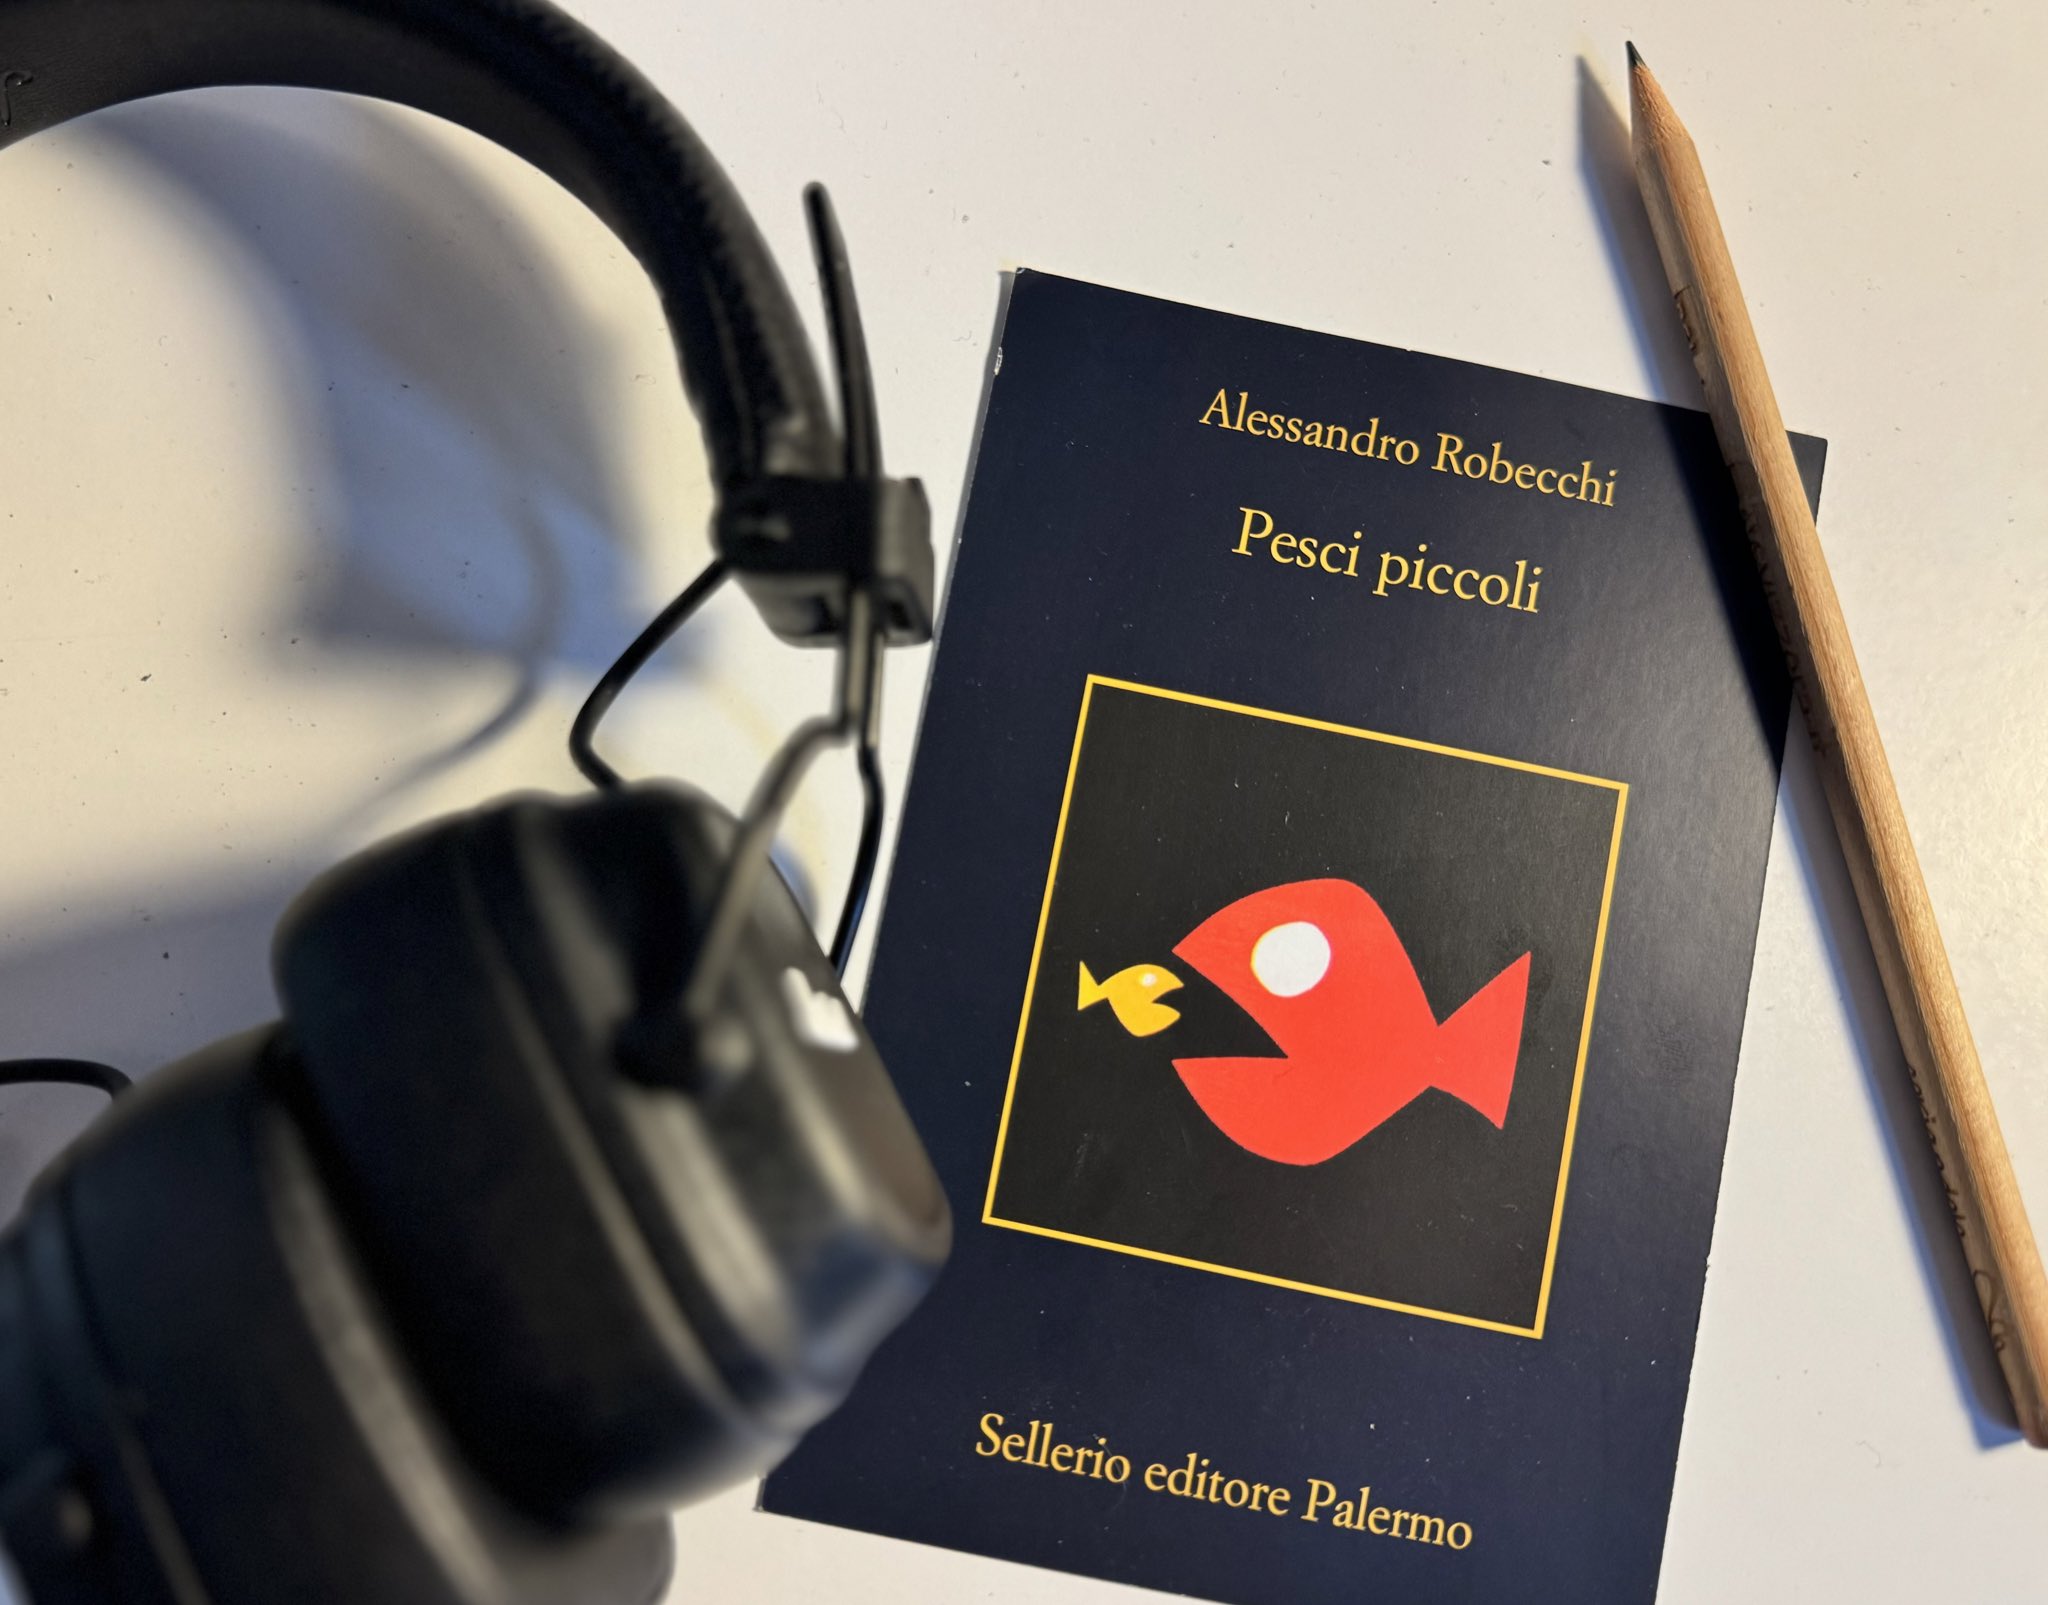 Alessandro Robecchi on X: Pesci piccoli, il nuovo romanzo. Dal 23 gennaio  in tutte le librerie e le piattaforme online @sellerioeditore   / X